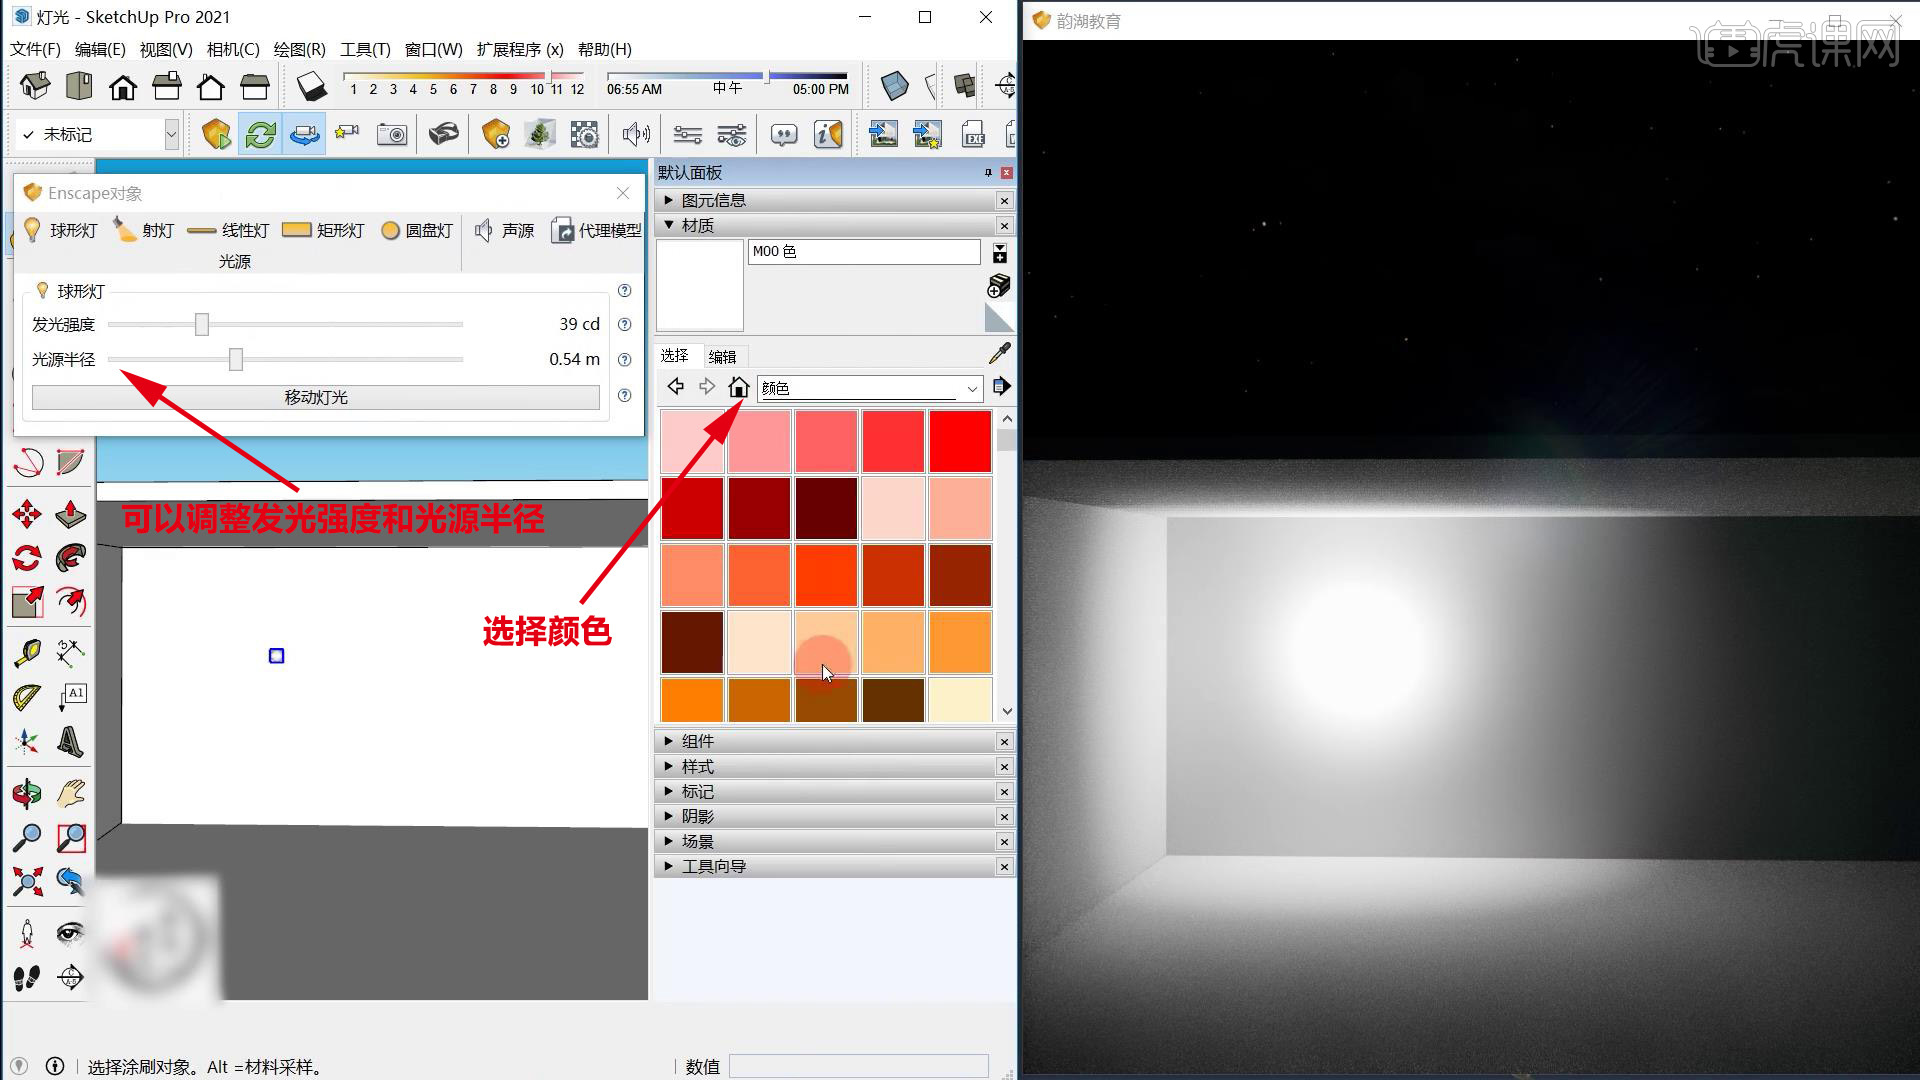 Enscape for sketchup-灯光设置-极速渲染 - 室内设计教程_SketchUp（2021）、Enscape（4.0） - 虎课网